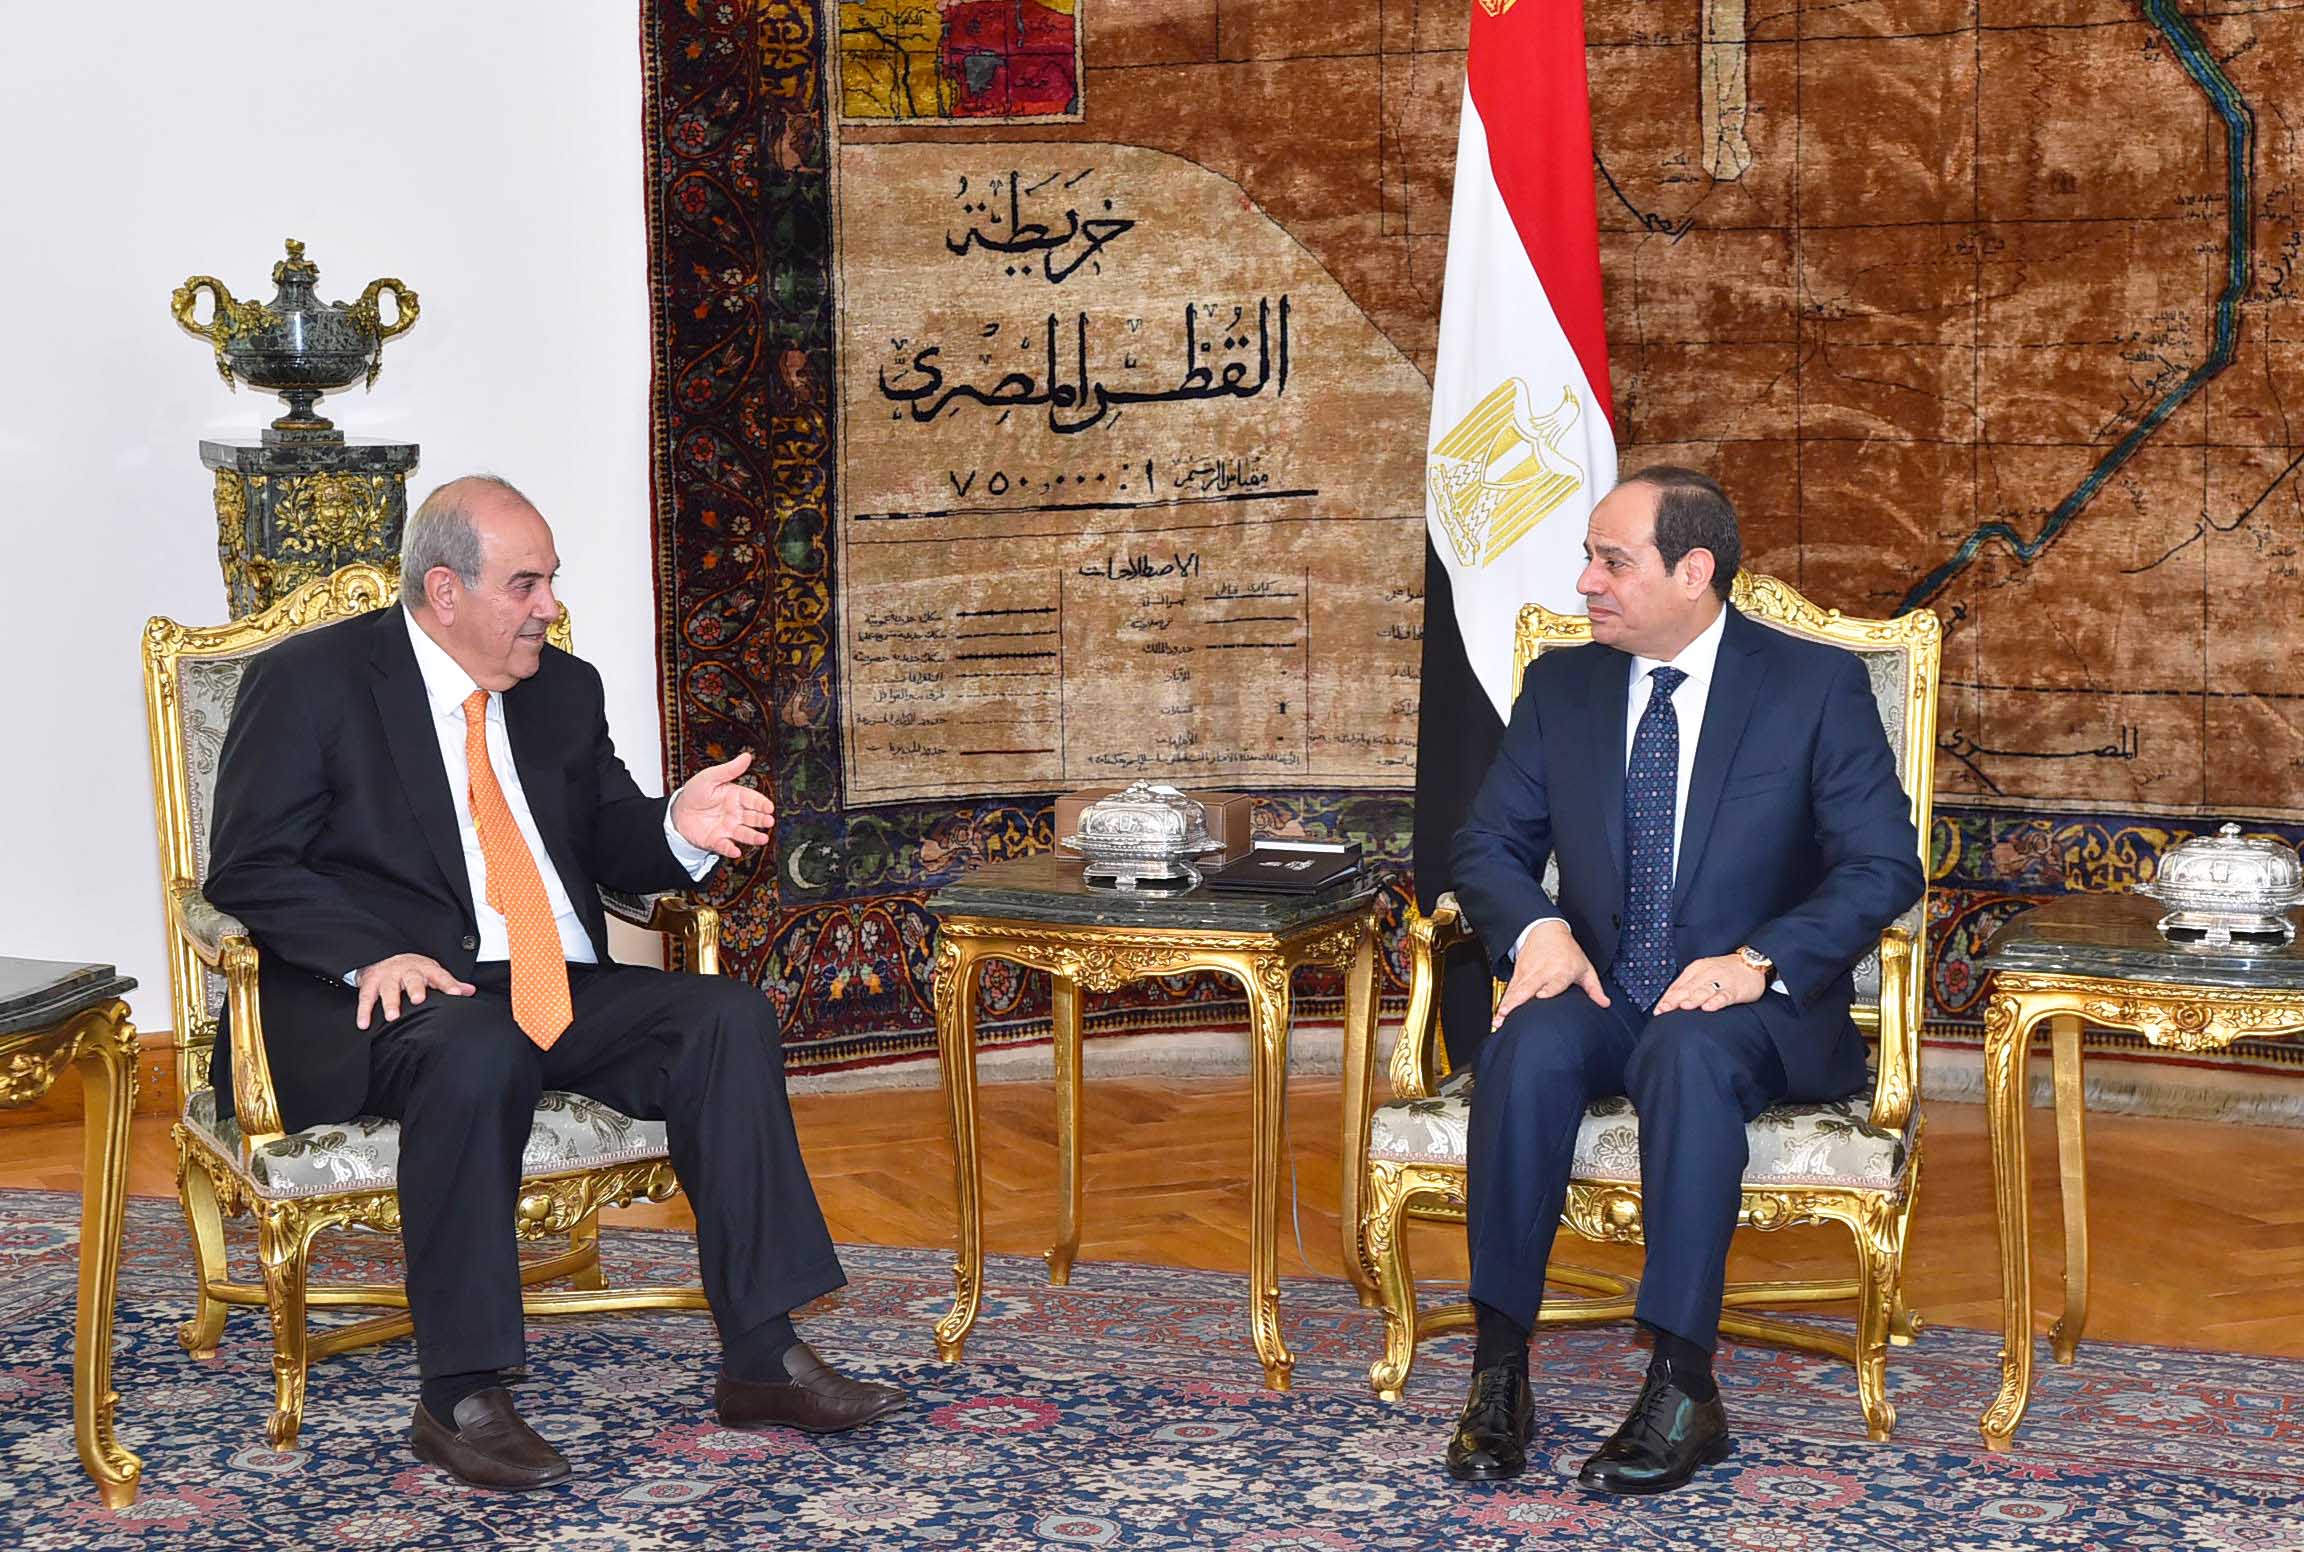 الرئيس المصري عبدالفتاح السيسي يلتقي مع نائب رئيس الجمهورية العراقية اياد علاوى